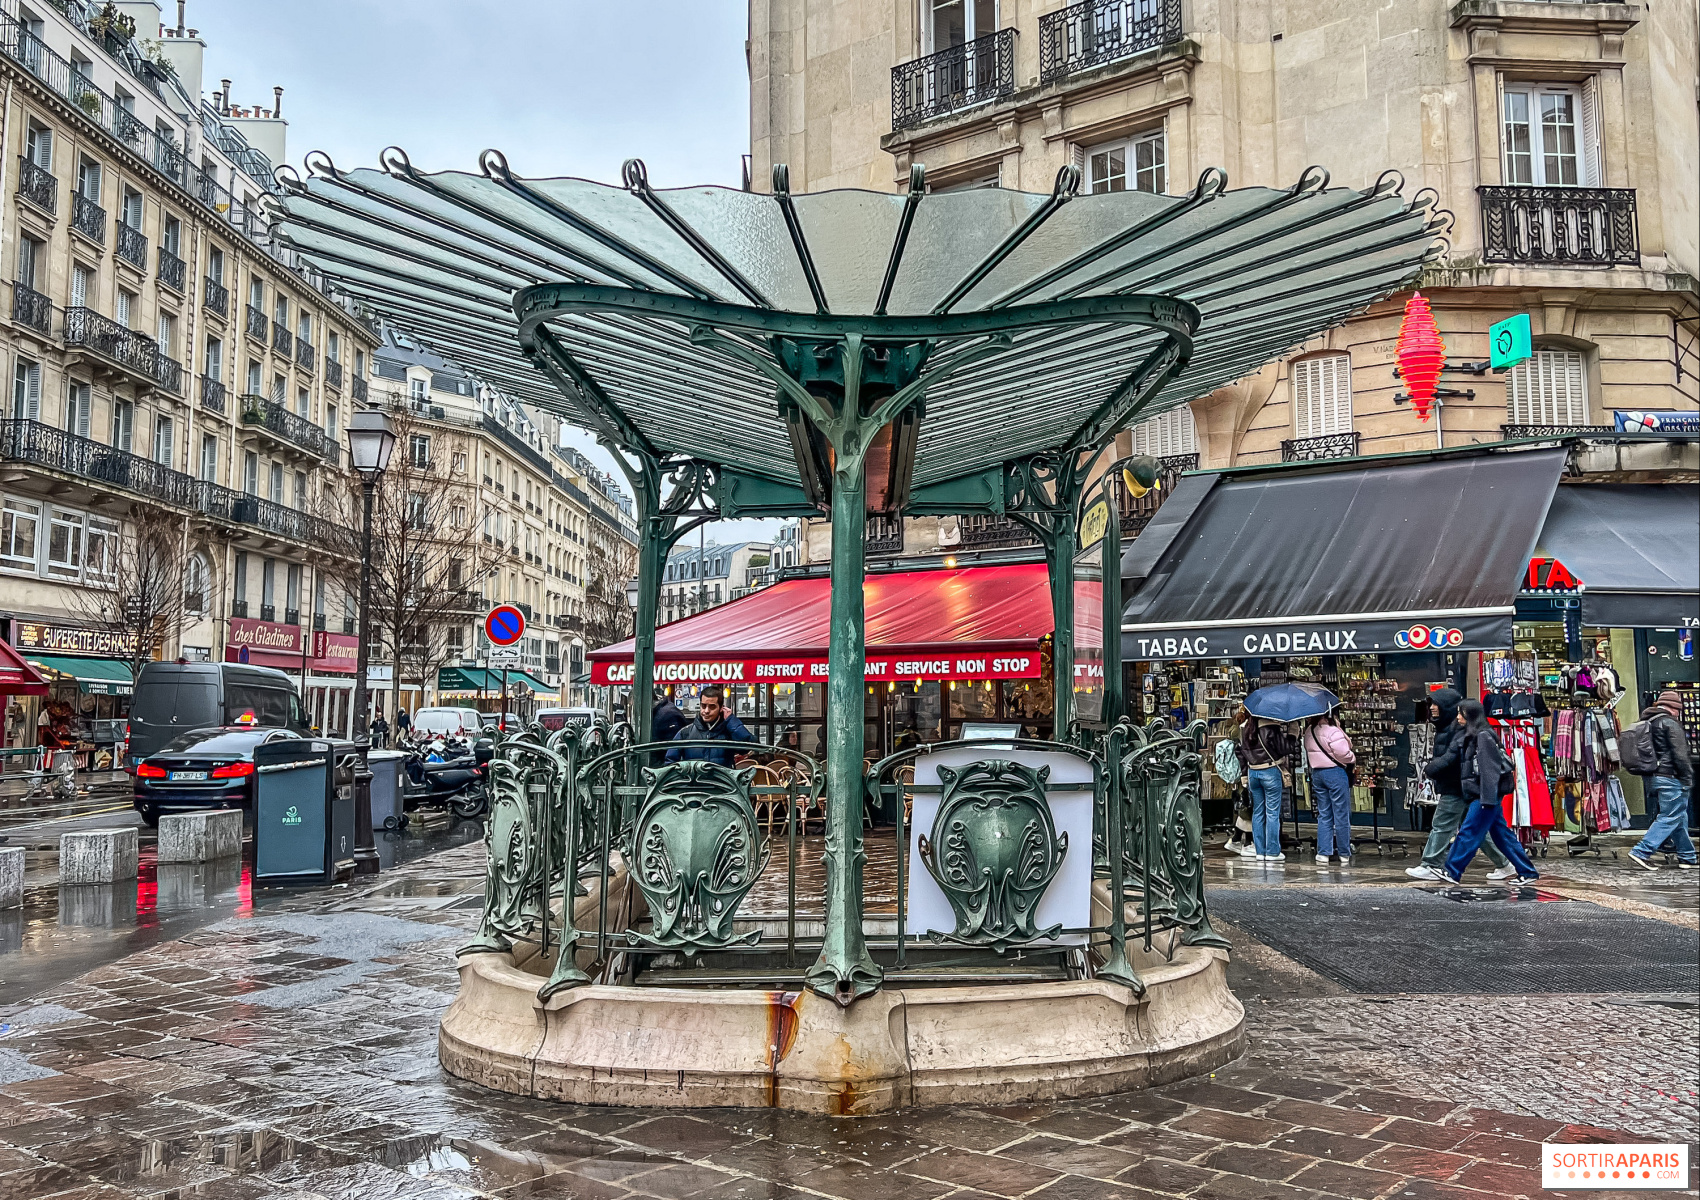 Les quatre meilleures stations météo - Le Parisien